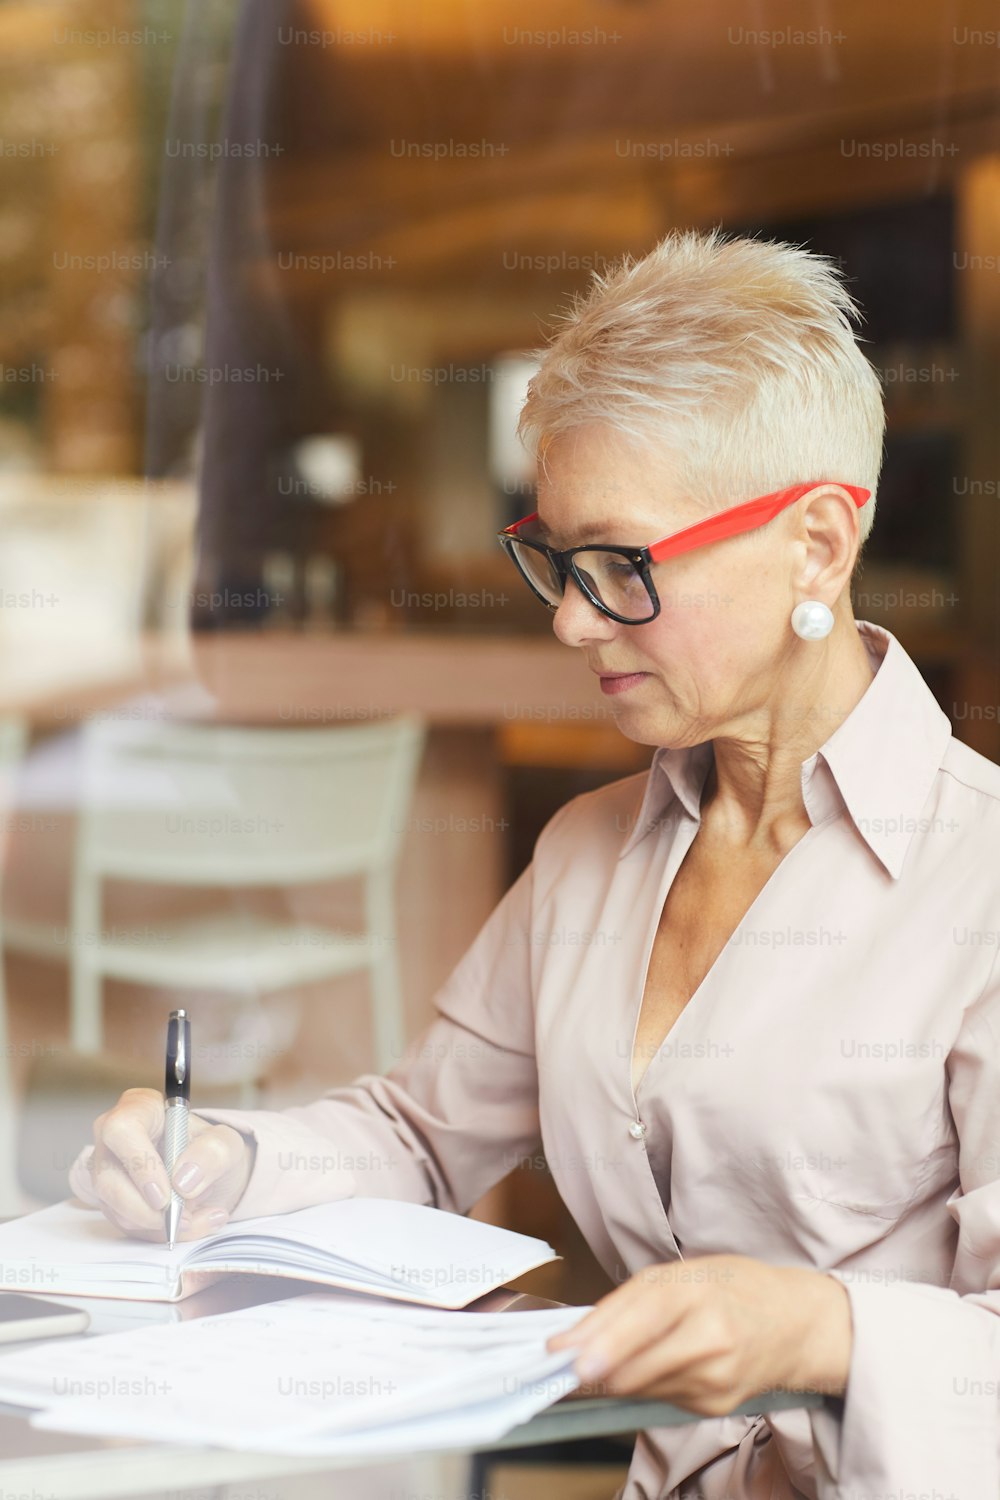 Empresaria madura concentrada con cabello corto rubio con anteojos sentada a la mesa y escribiendo algo en documentos en un café